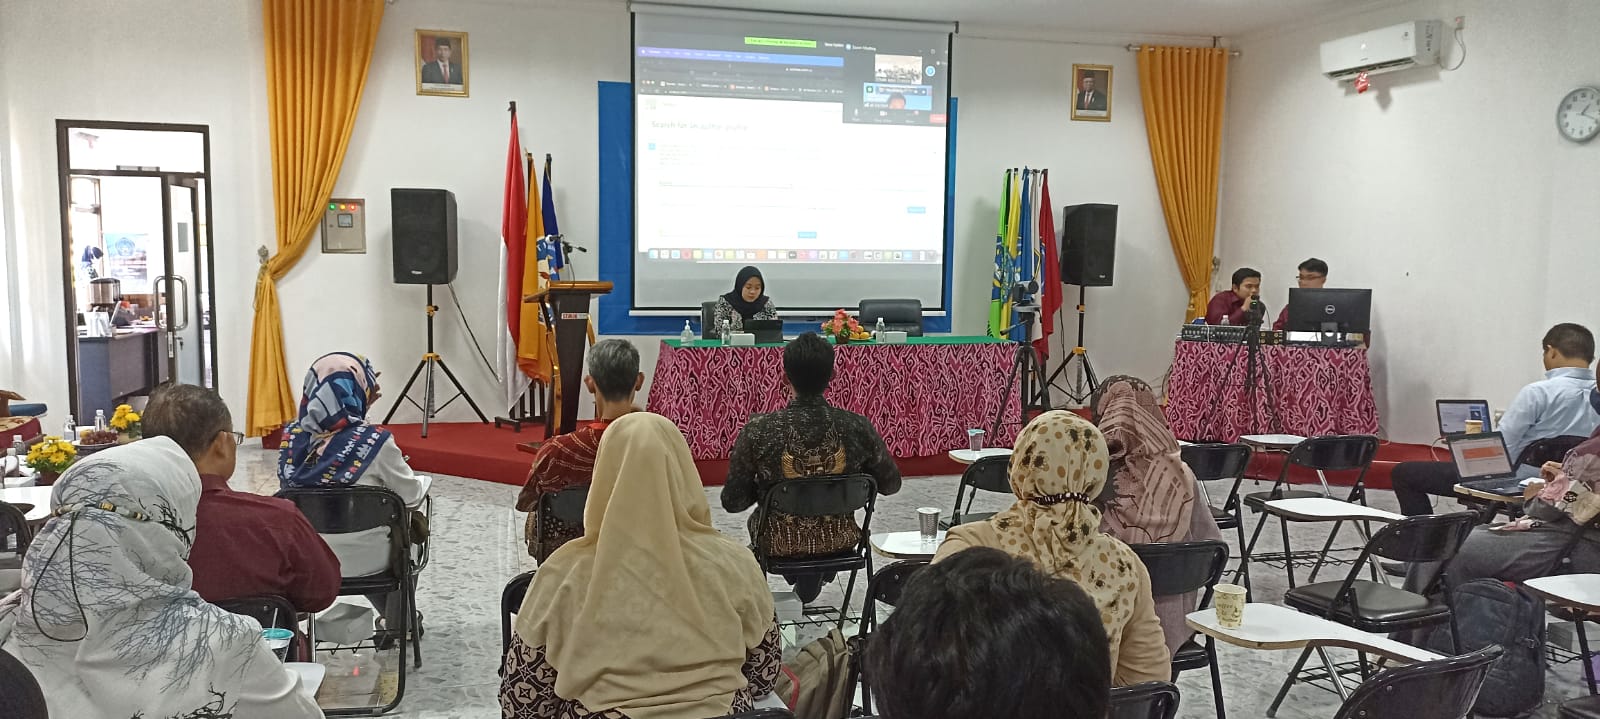 Kinerja Terus Meningkat, STMIK IKMI Cirebon Dipercaya sebagai Tuan Rumah Pemeringkatan Kinerja oleh LLDIKTI